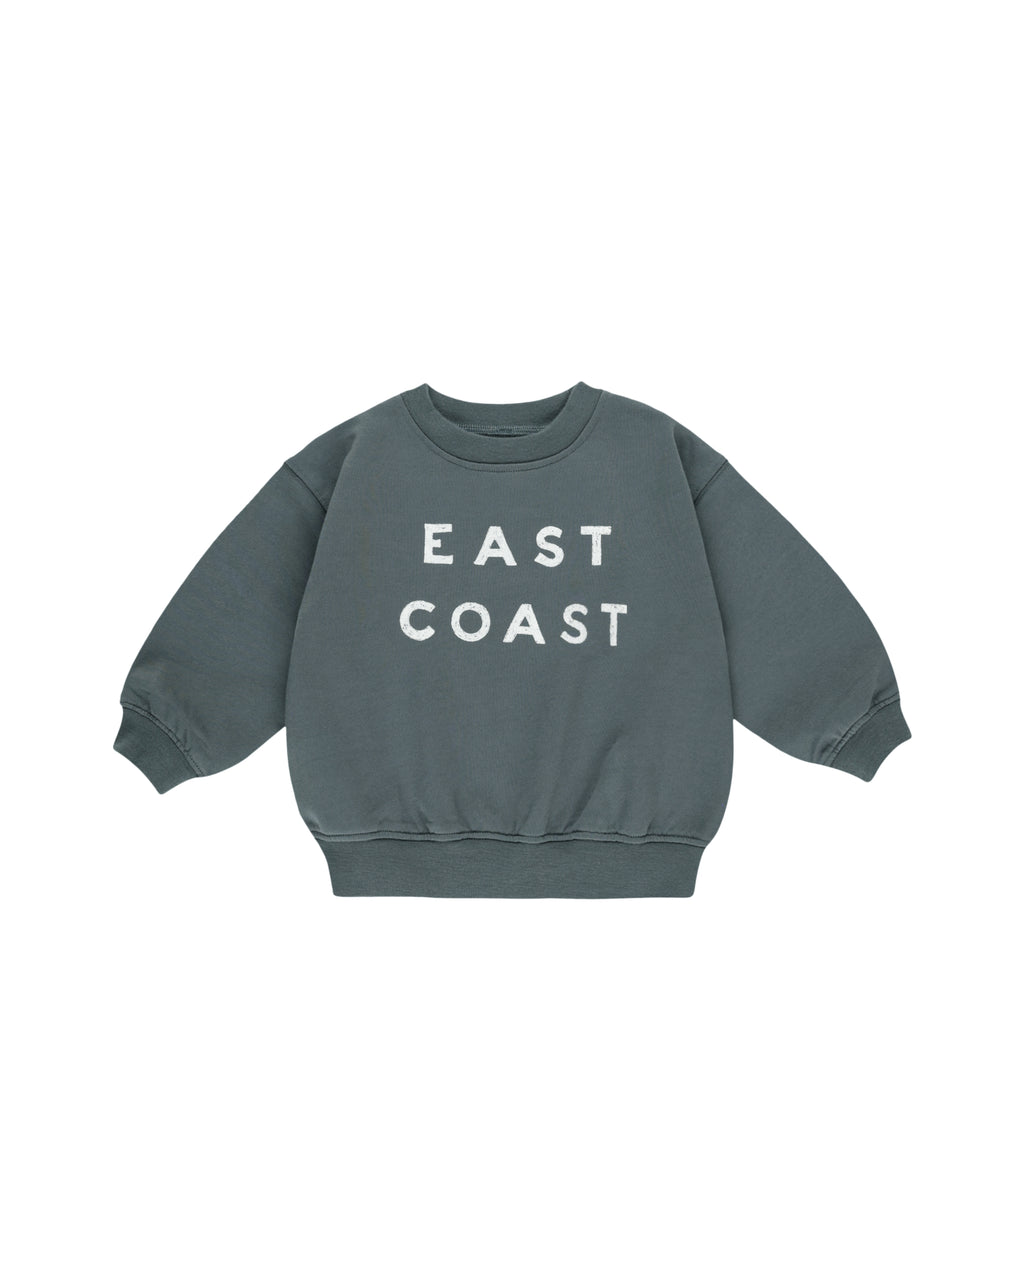 Rylee + Cru Sweatshirt in East Coast